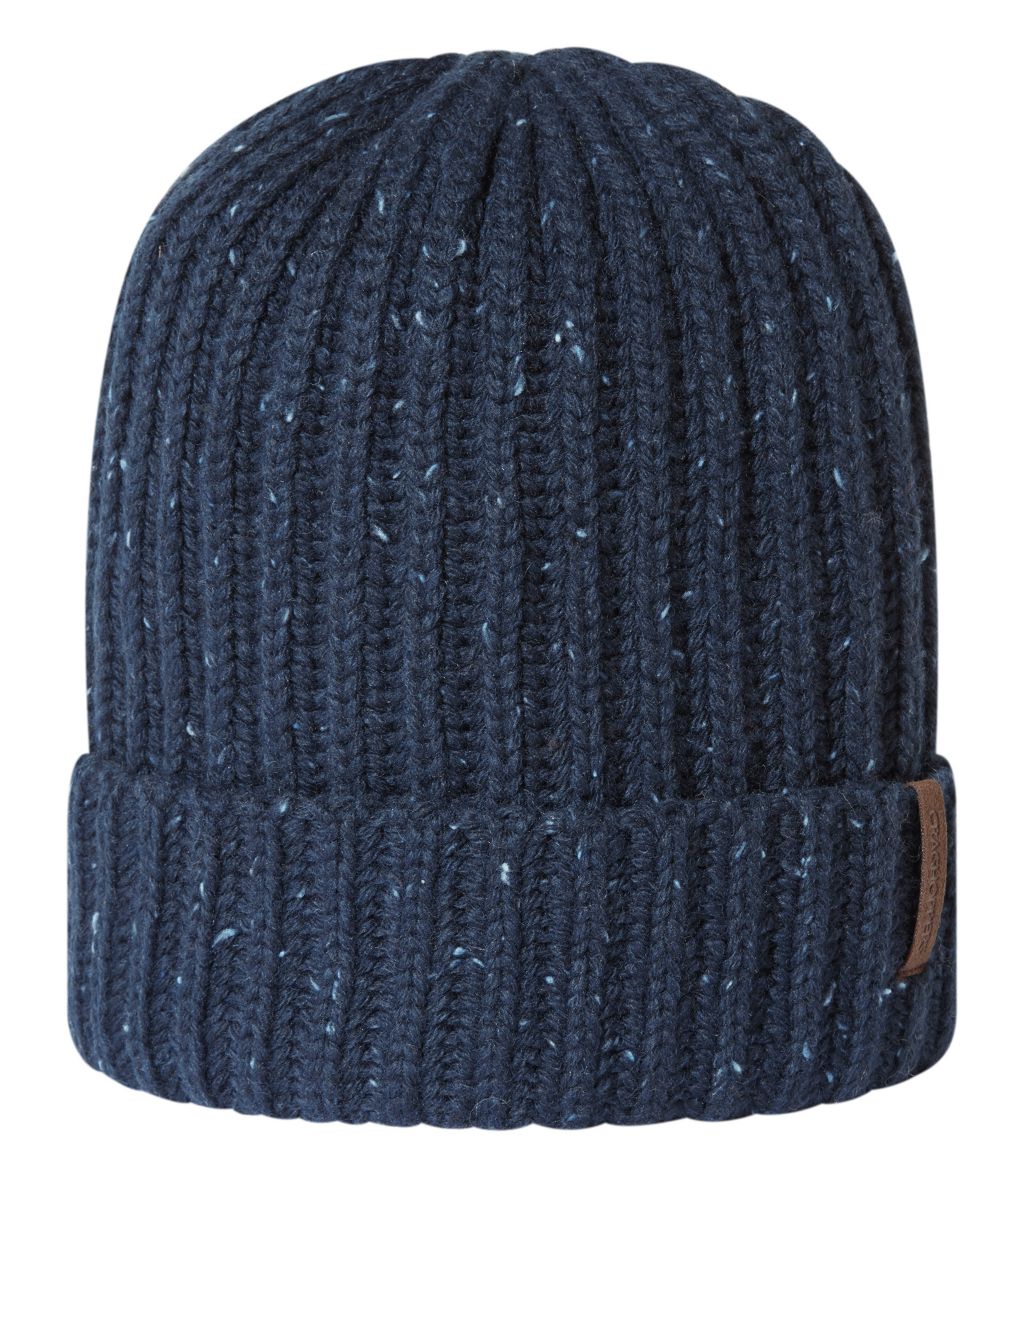 Wool Blend Textured Beanie Hat